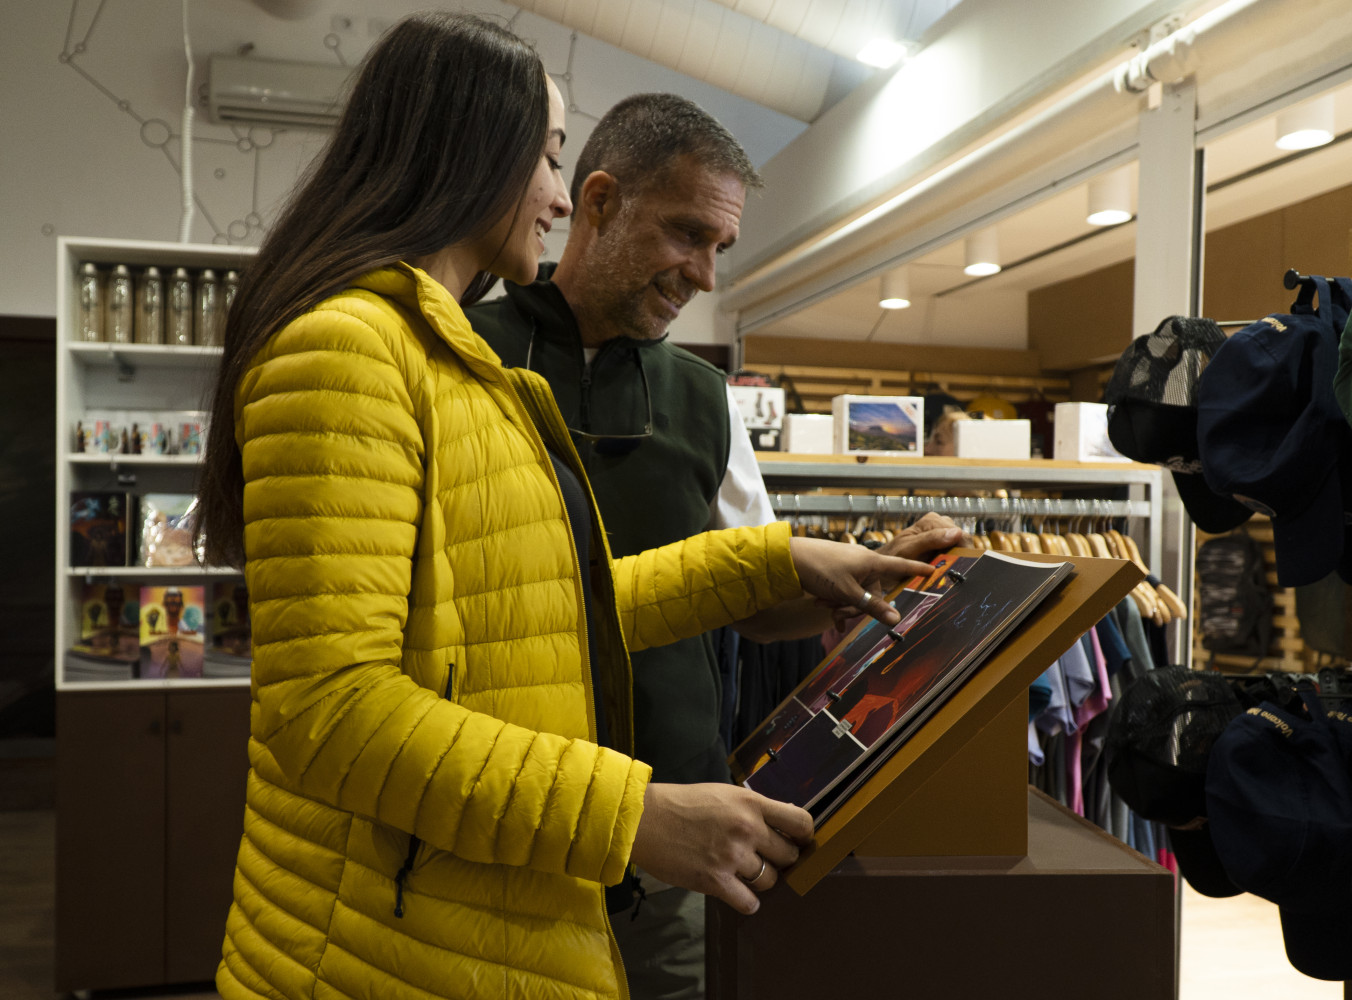 TPareja eligiendo su regalo en la tienda oficial de souvenirs del Centro de Visitantes del Teleférico del Teide